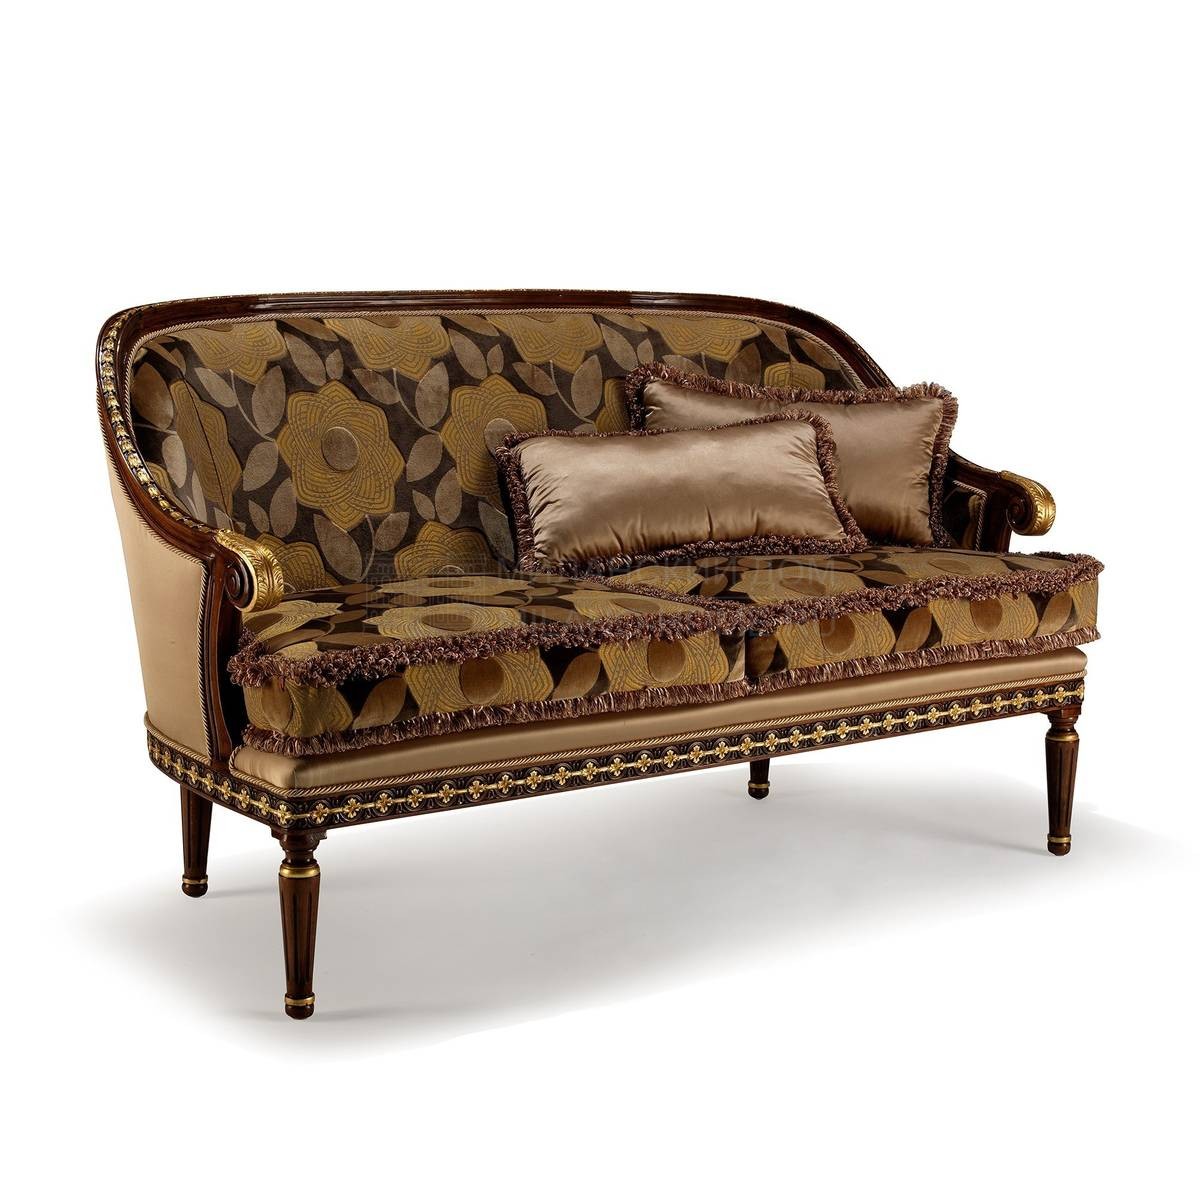 Прямой диван The Upholstery/D379 из Италии фабрики FRANCESCO MOLON